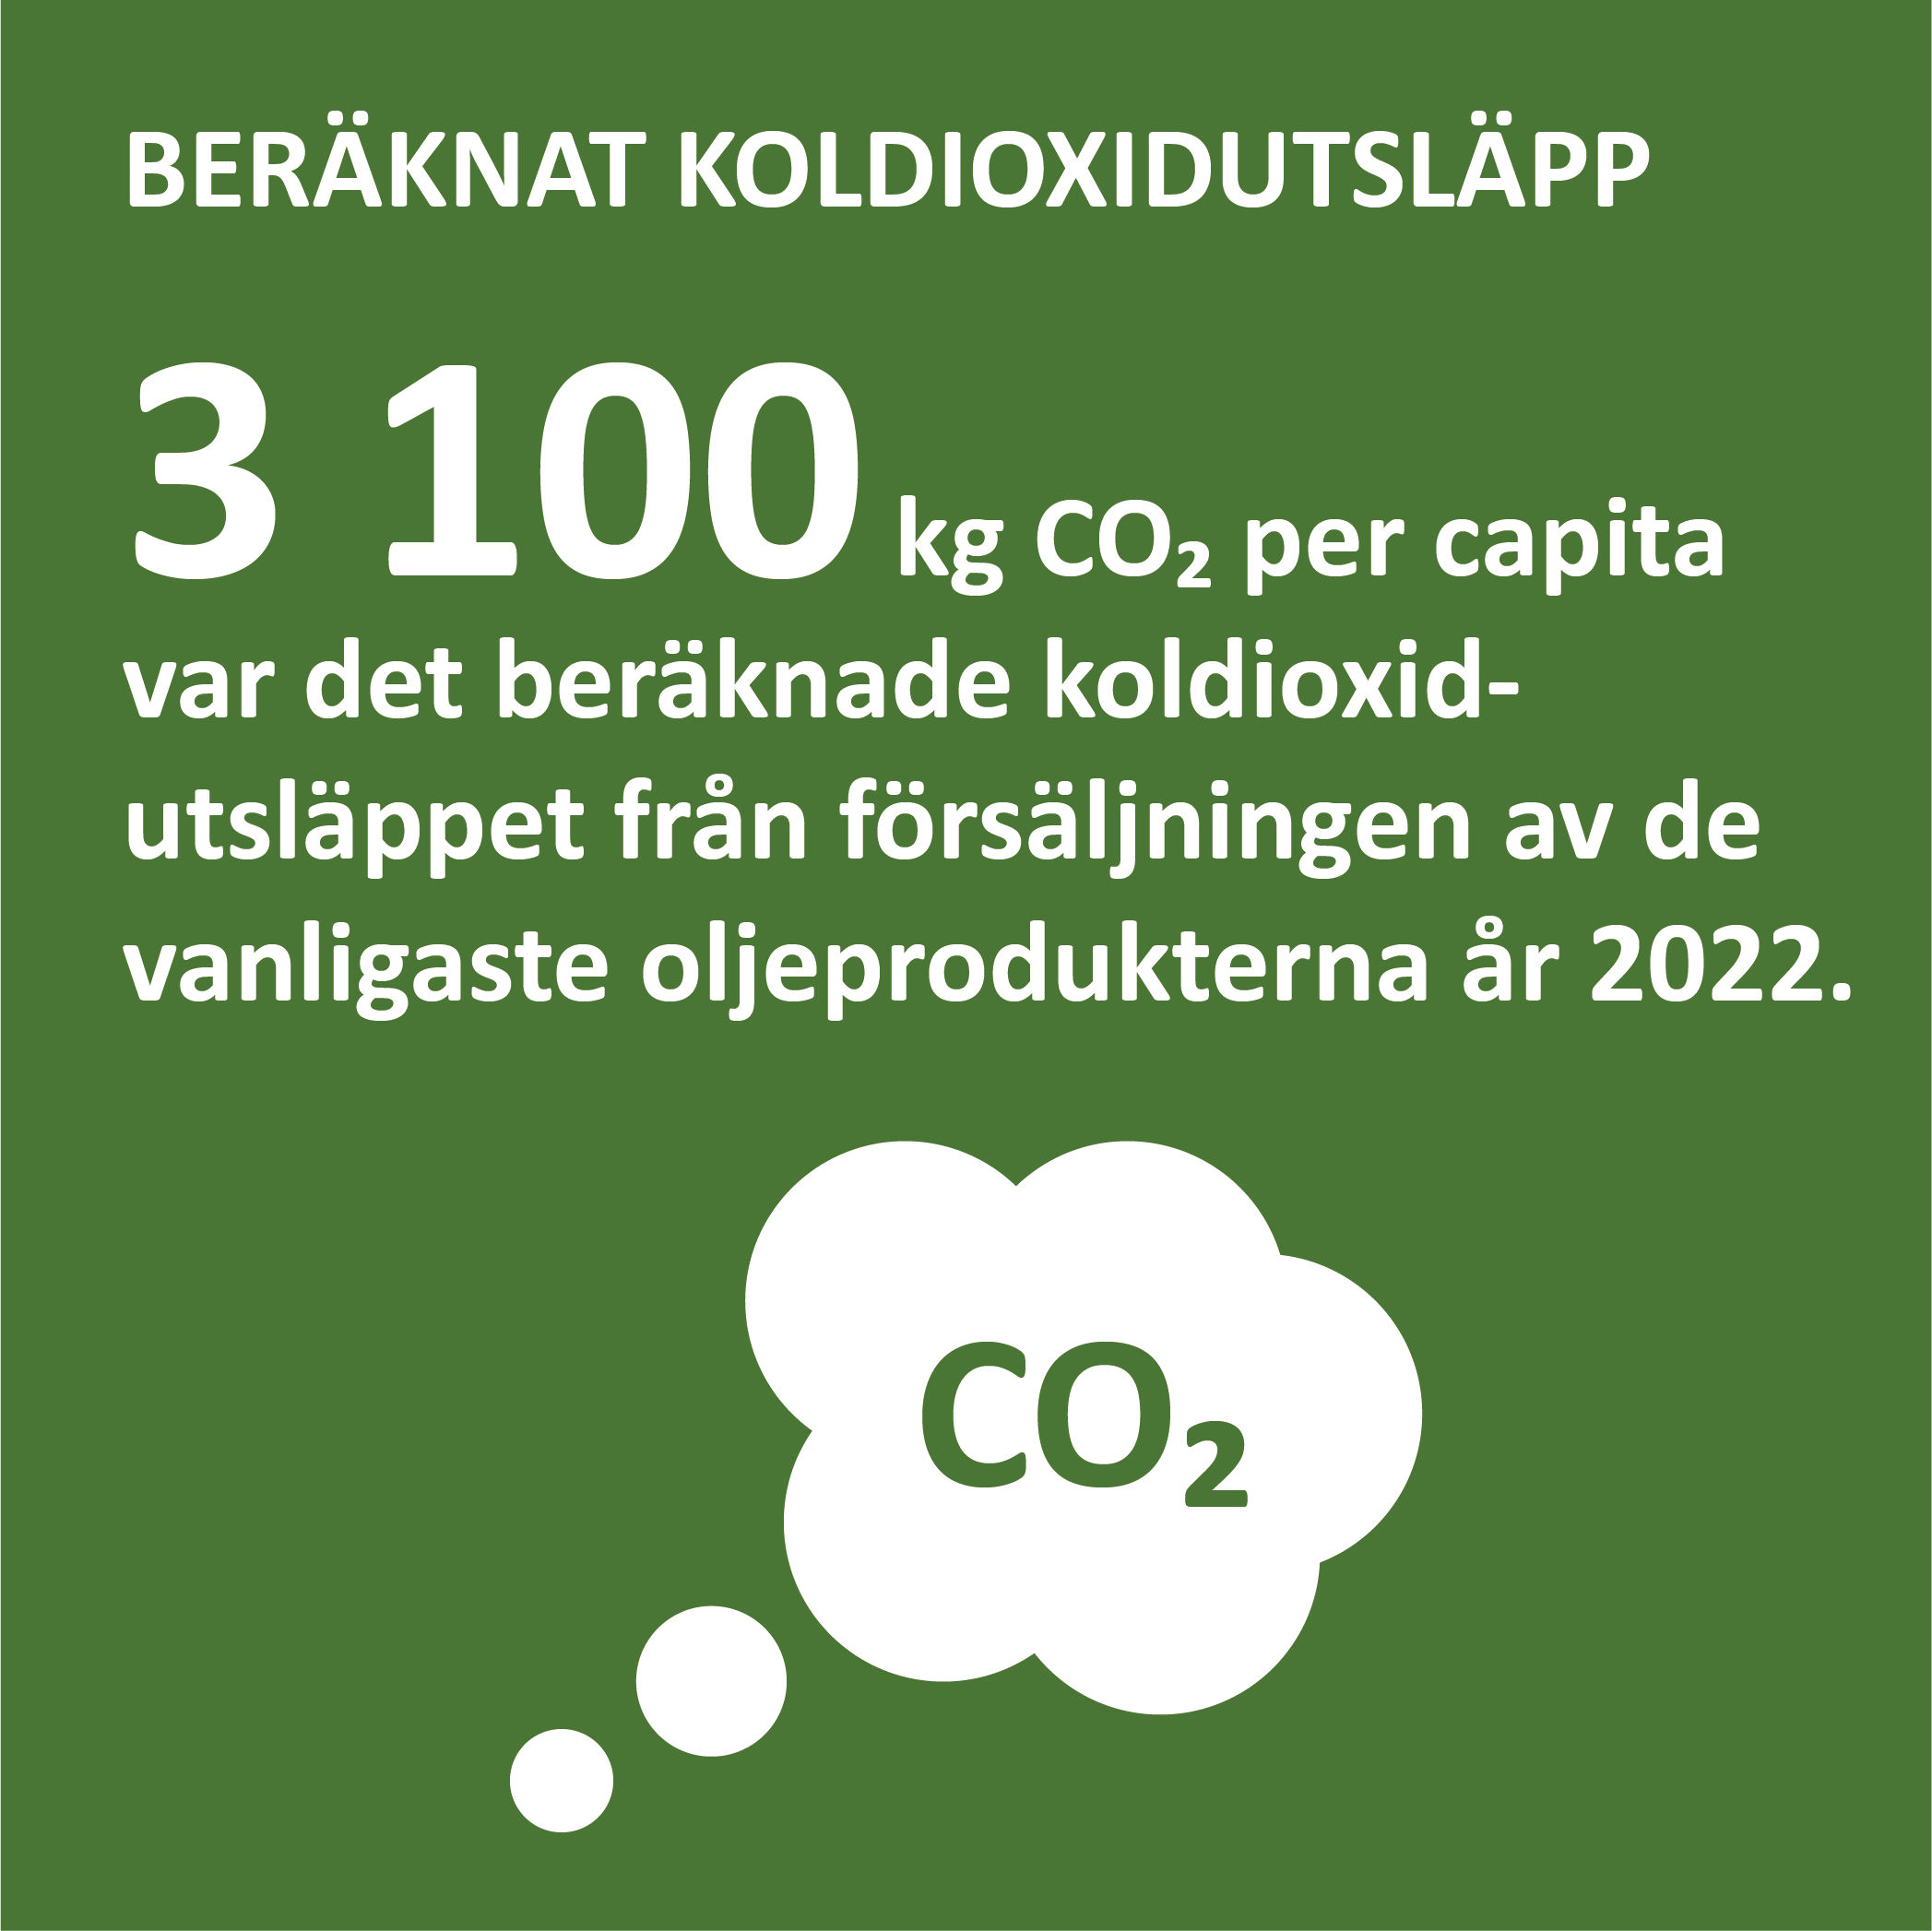 Infografik om det beräknade koldioxidutsläppet från oljeprodukter på Åland